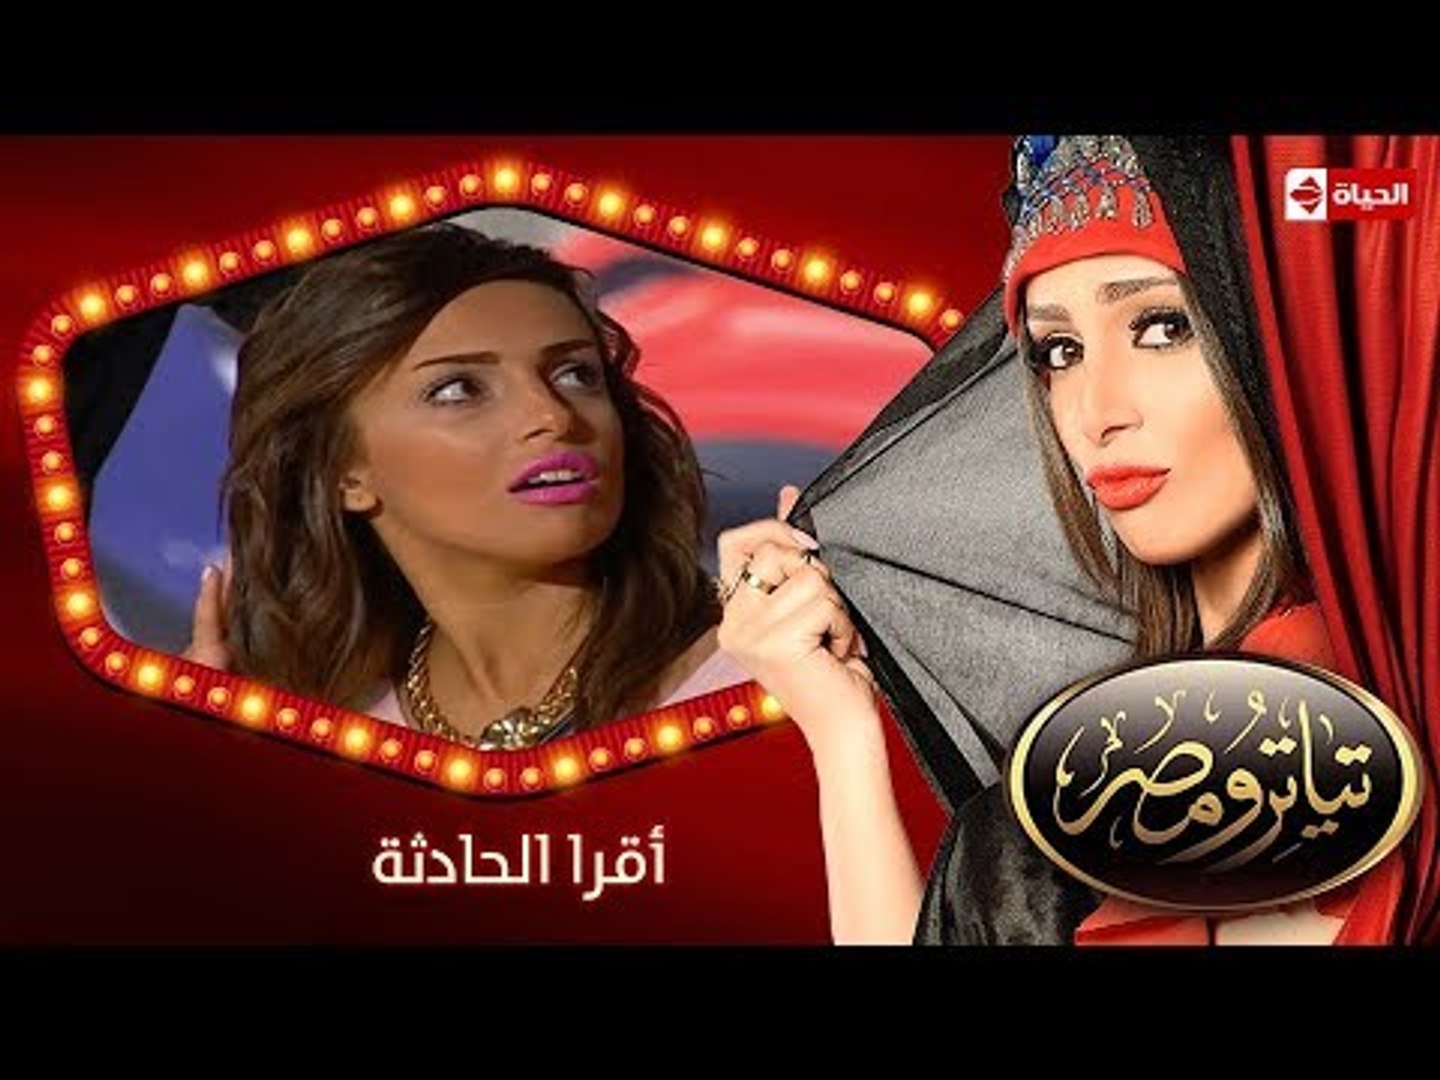 تياترو مصر | الموسم الثانى | الحلقة 2 الثانية | أقرا الحادثة | حمدي المرغني و أوس أوس| Teatro Masr